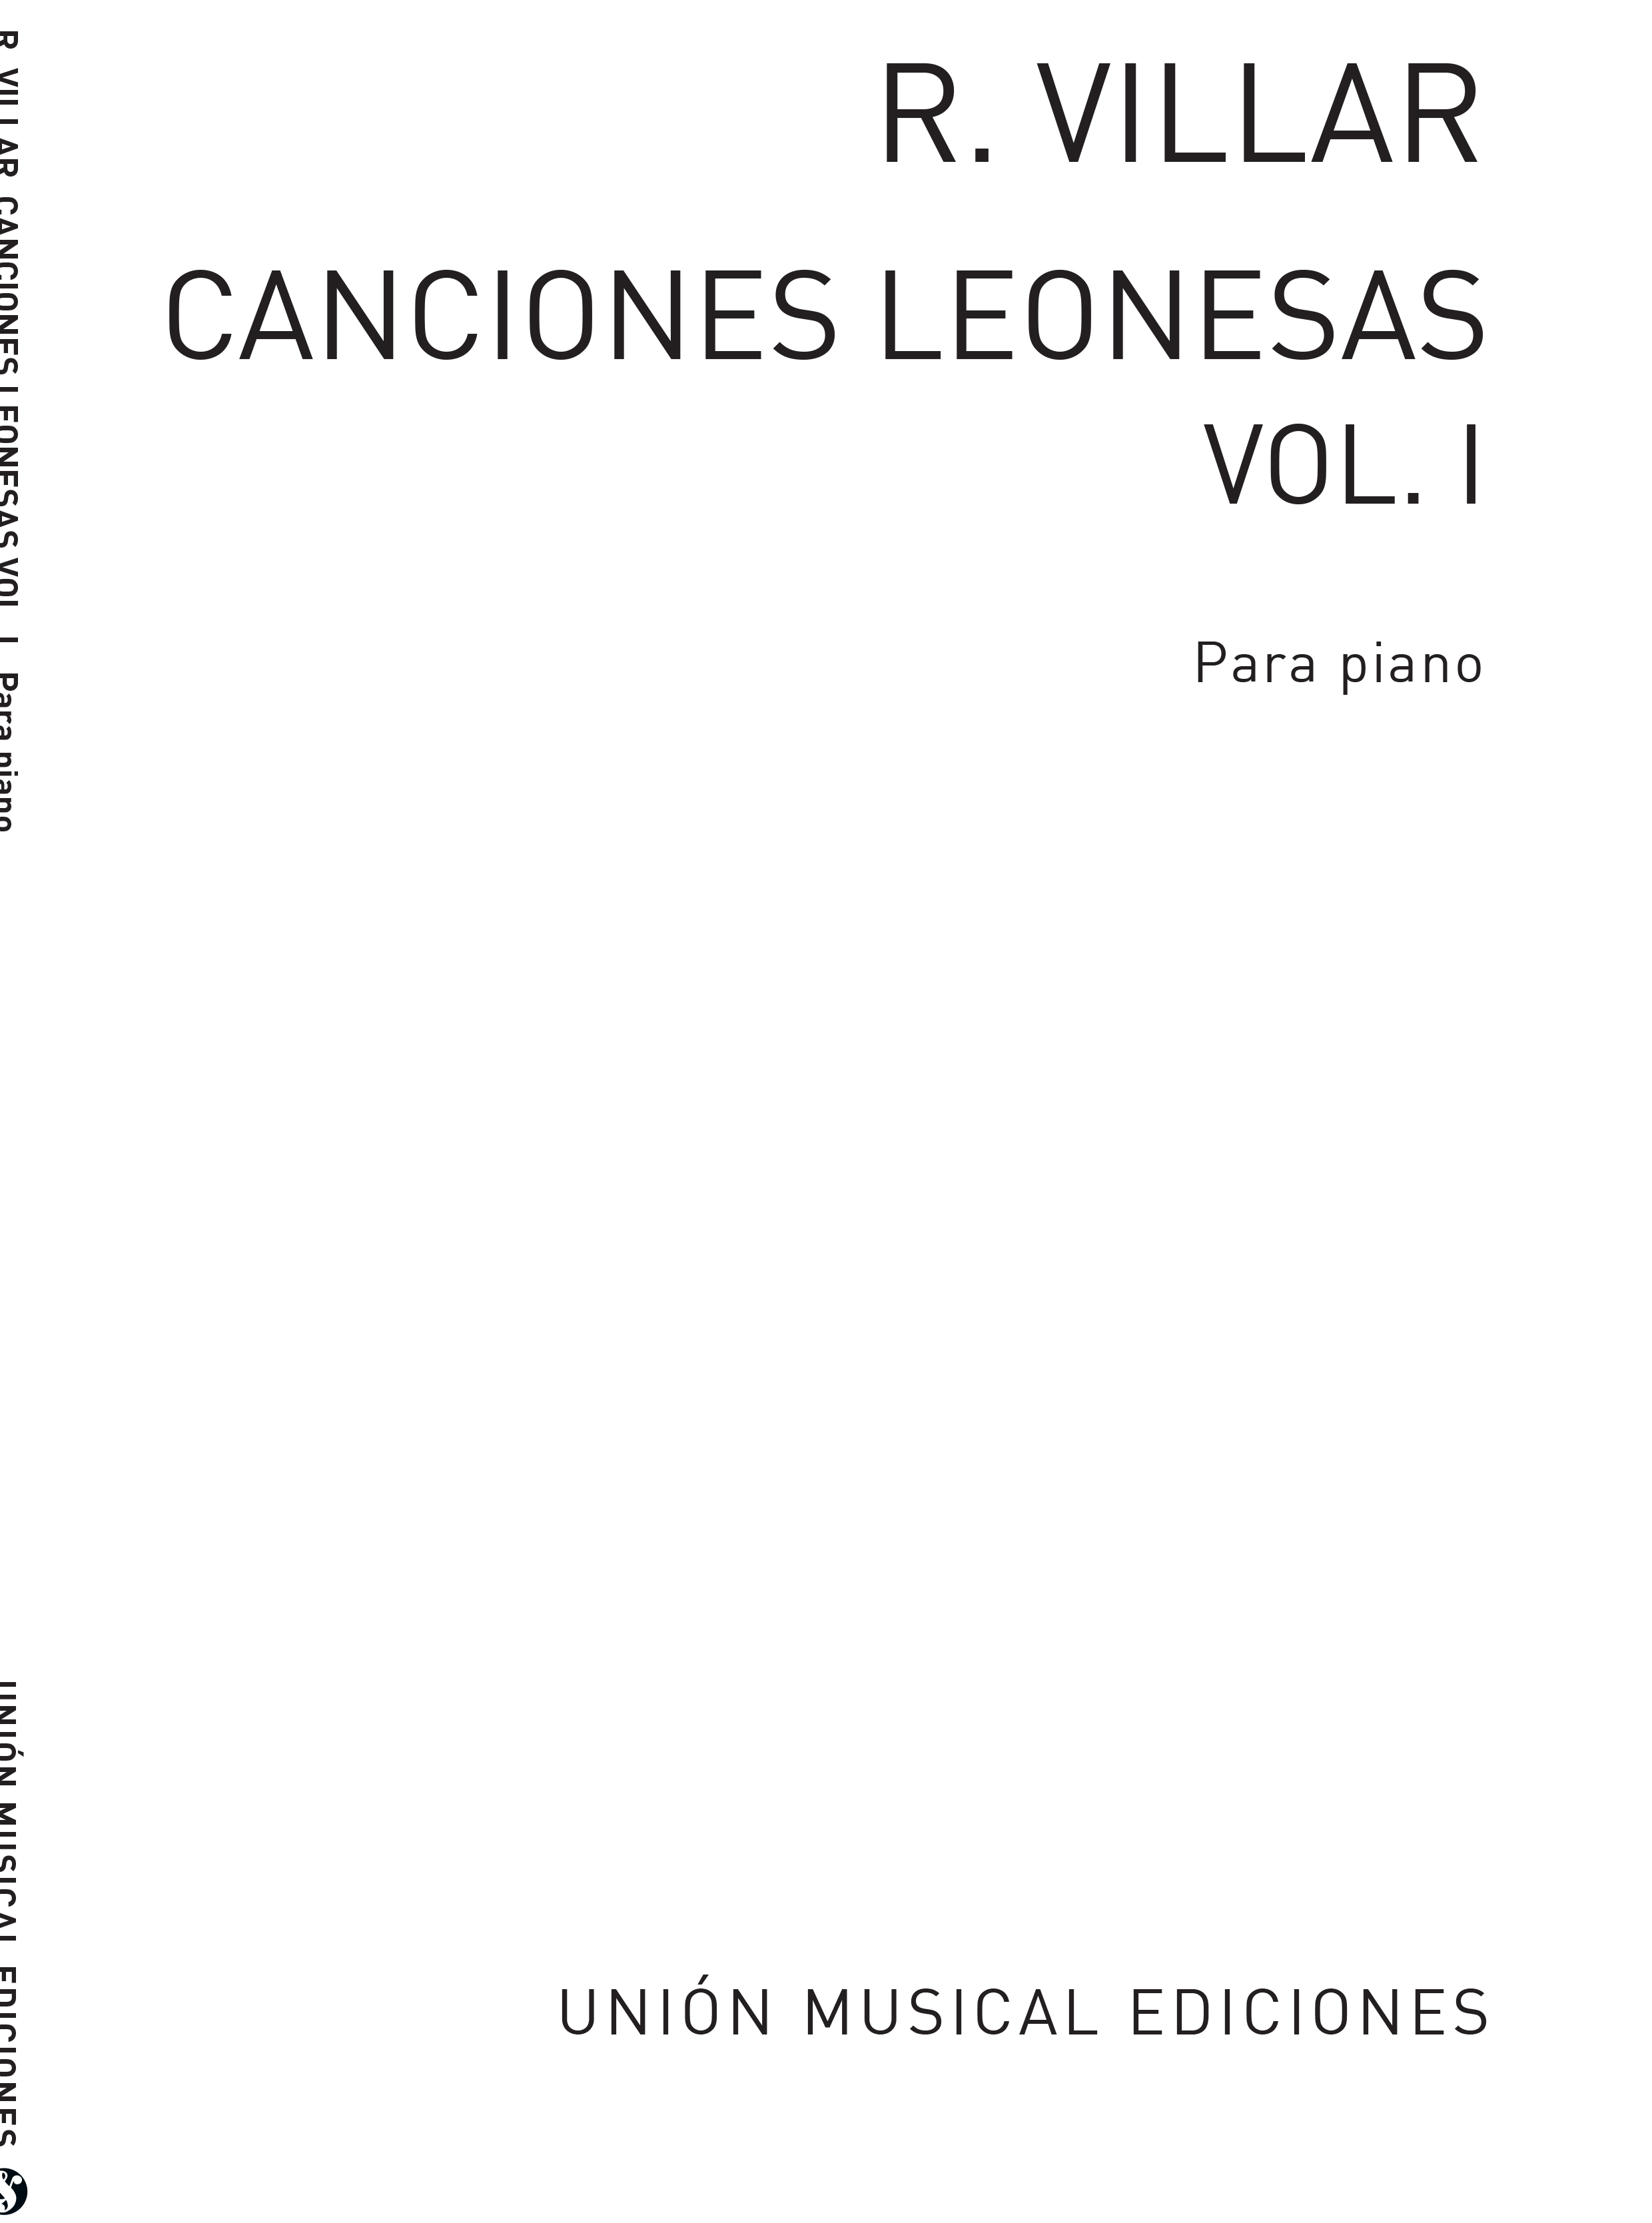 Rogelio Villar: Canciones Leonesas Vol.1: Piano: Instrumental Album